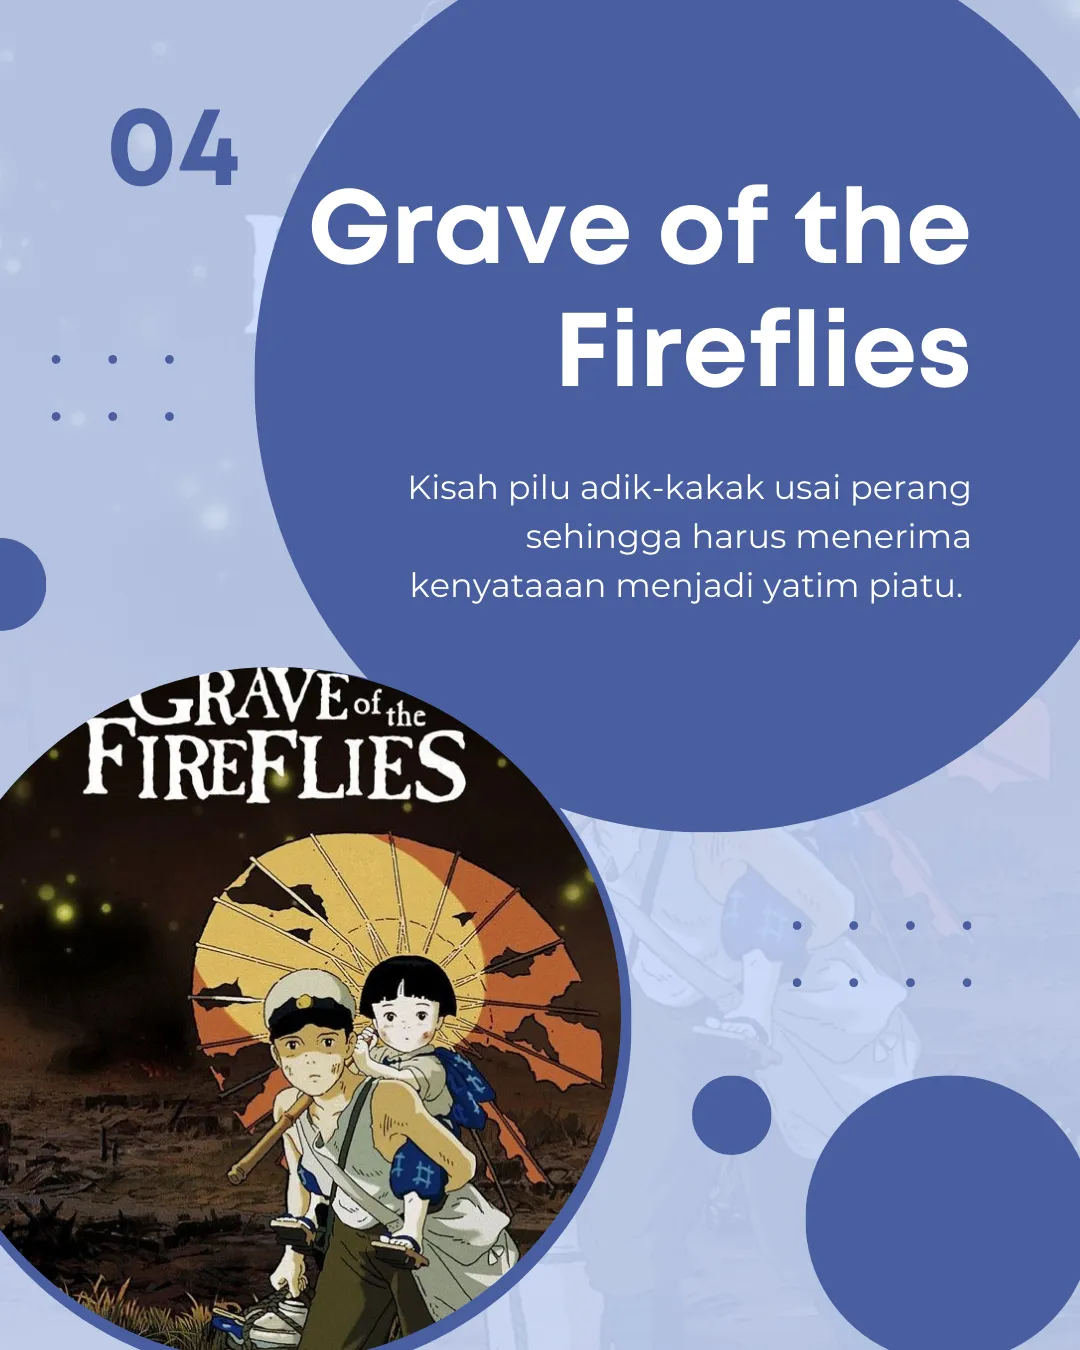 grave of fireflies netflix｜TikTok Search